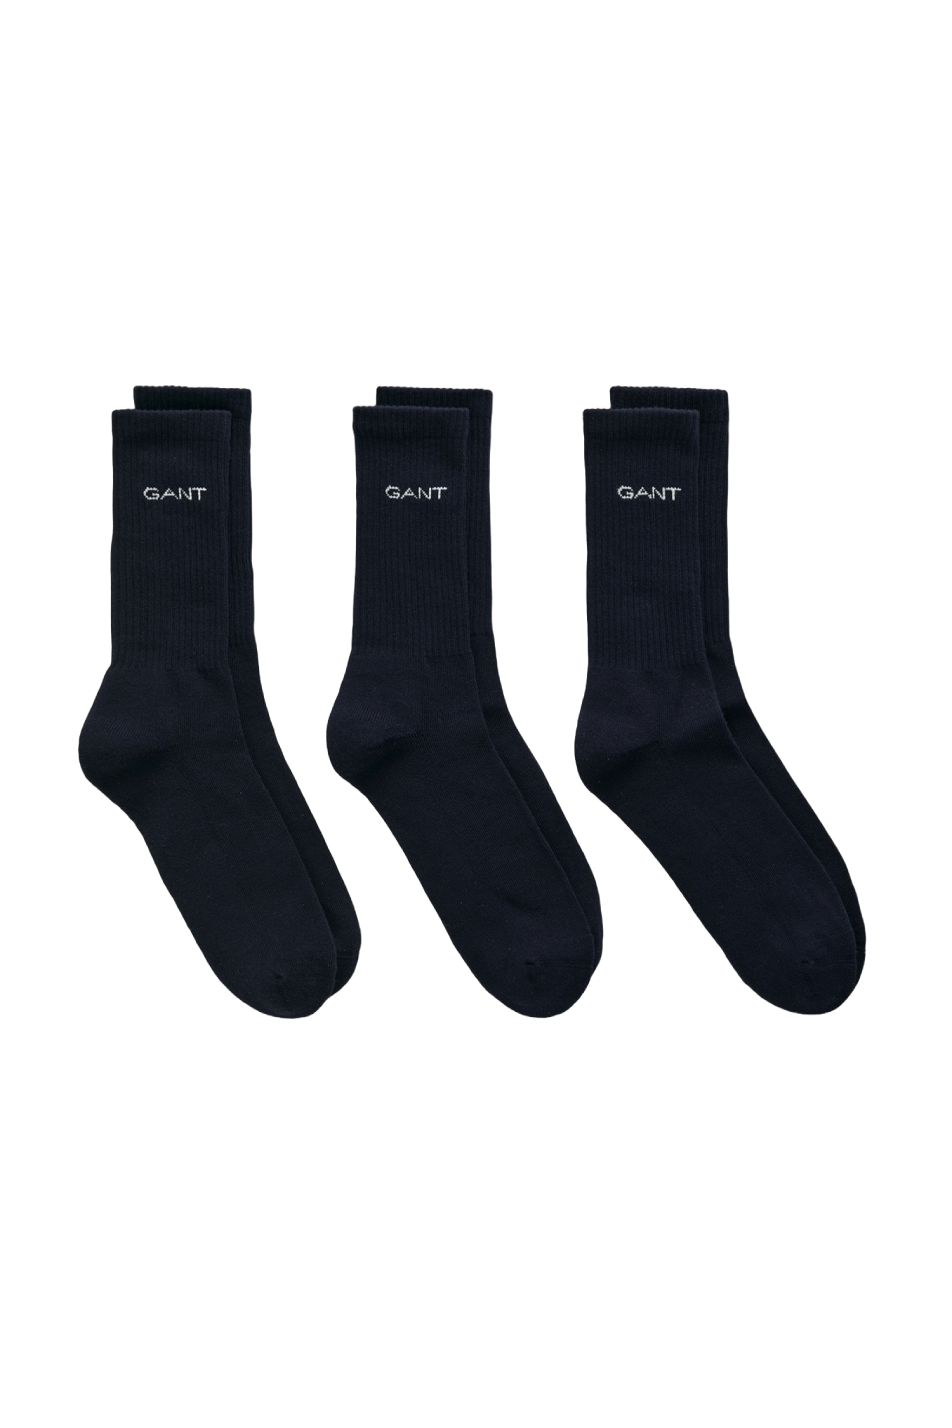 Gant 3 Pack Men's Sports Socks